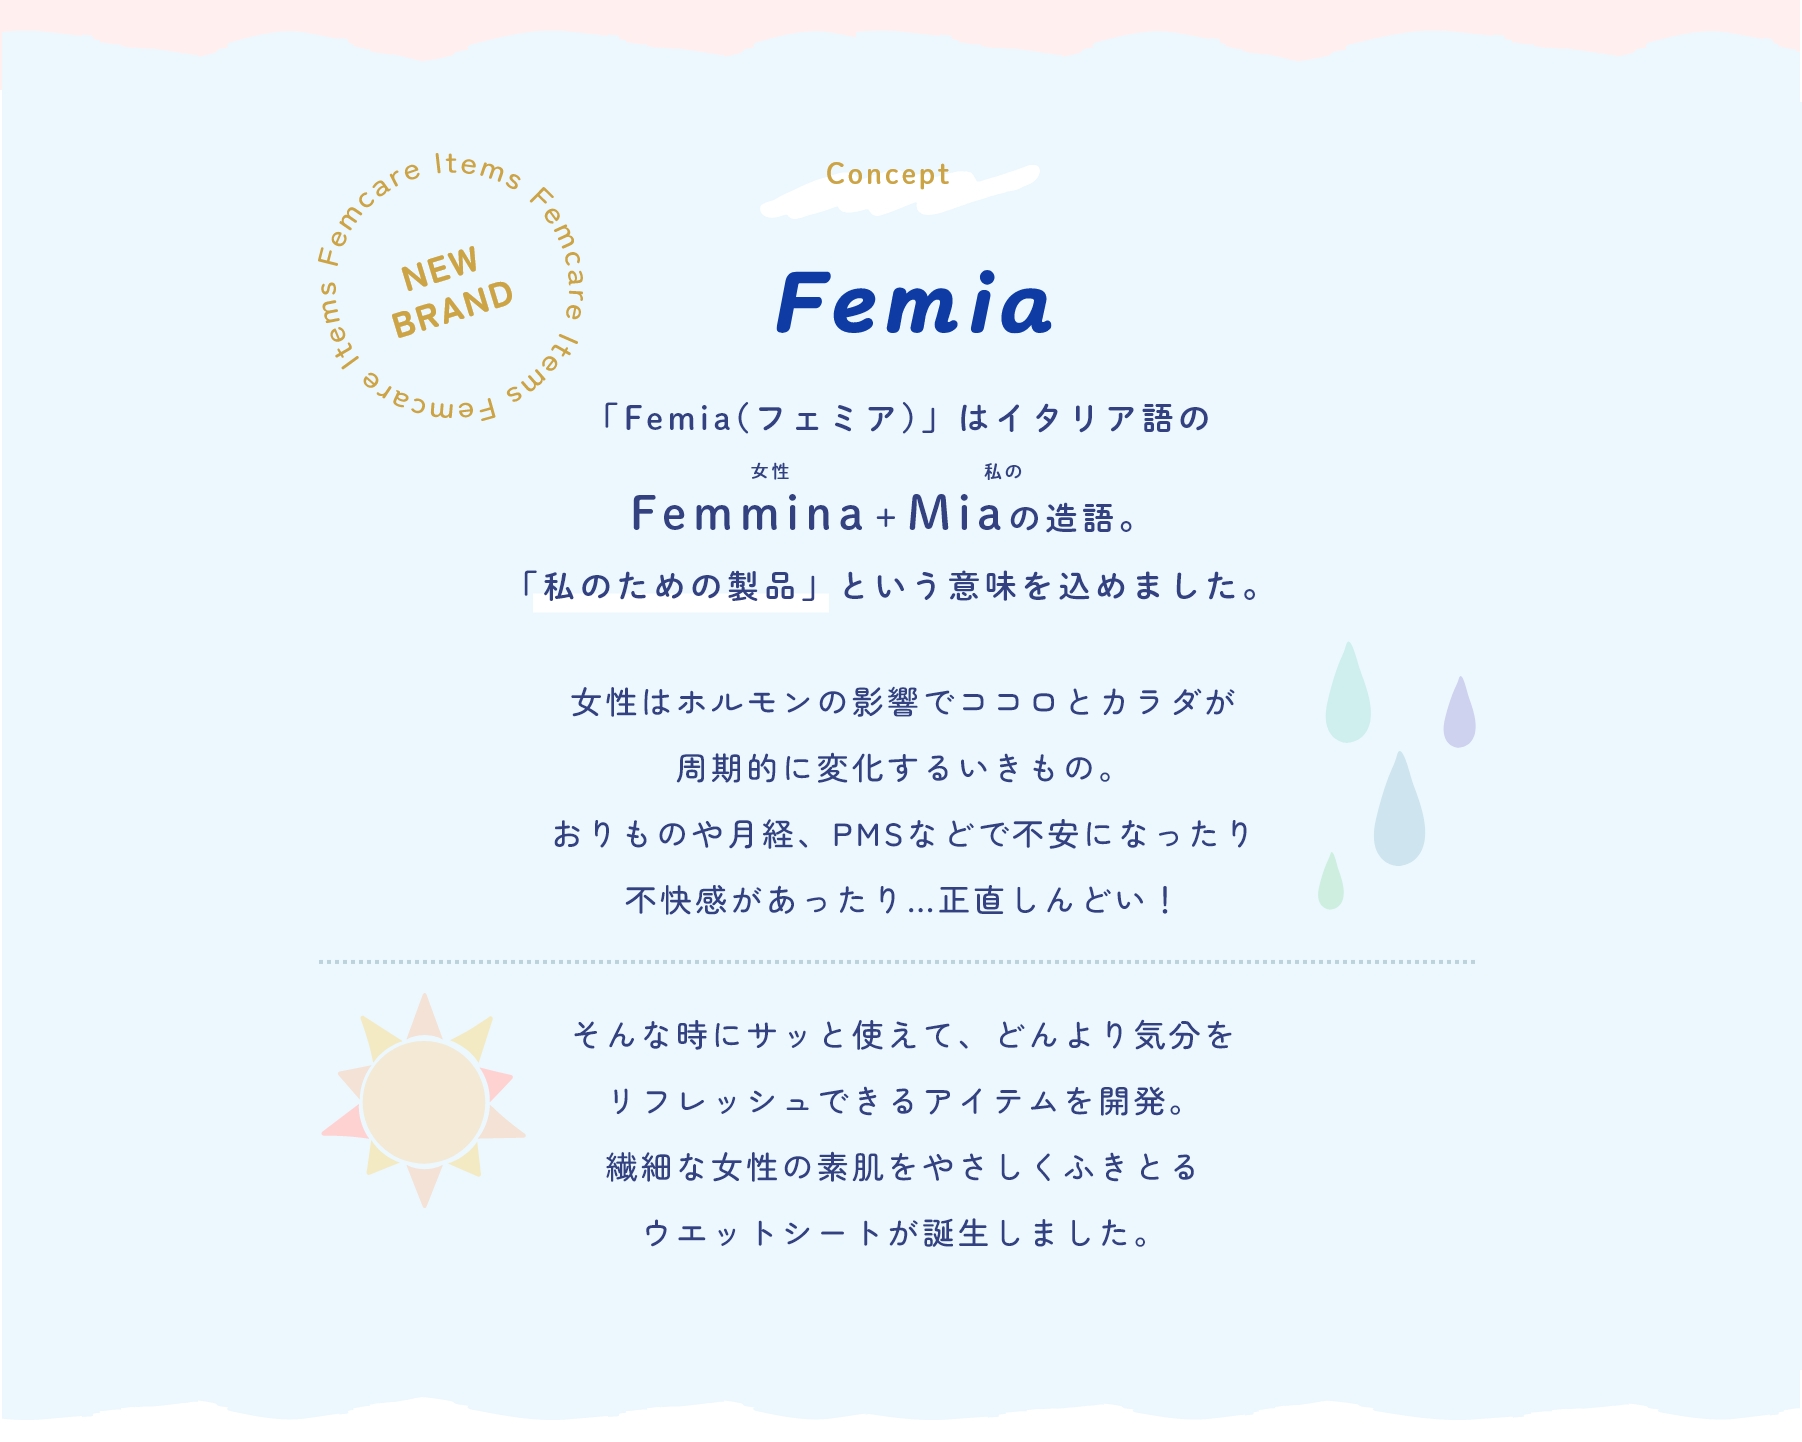 「Femia(フェミア)」はイタリア語のFemmina＋Miaの造語。「私のための製品」という意味を込めました。女性はホルモンの影響でココロとカラダが
周期的に変化するいきもの。おりものや月経、PMSなどで不安になったり不快感があったり…正直しんどい！そんな時にサッと使えて、どんより気分をリフレッシュできるアイテムを開発。
繊細な女性の素肌をやさしくふきとるウエットシートが誕生しました。